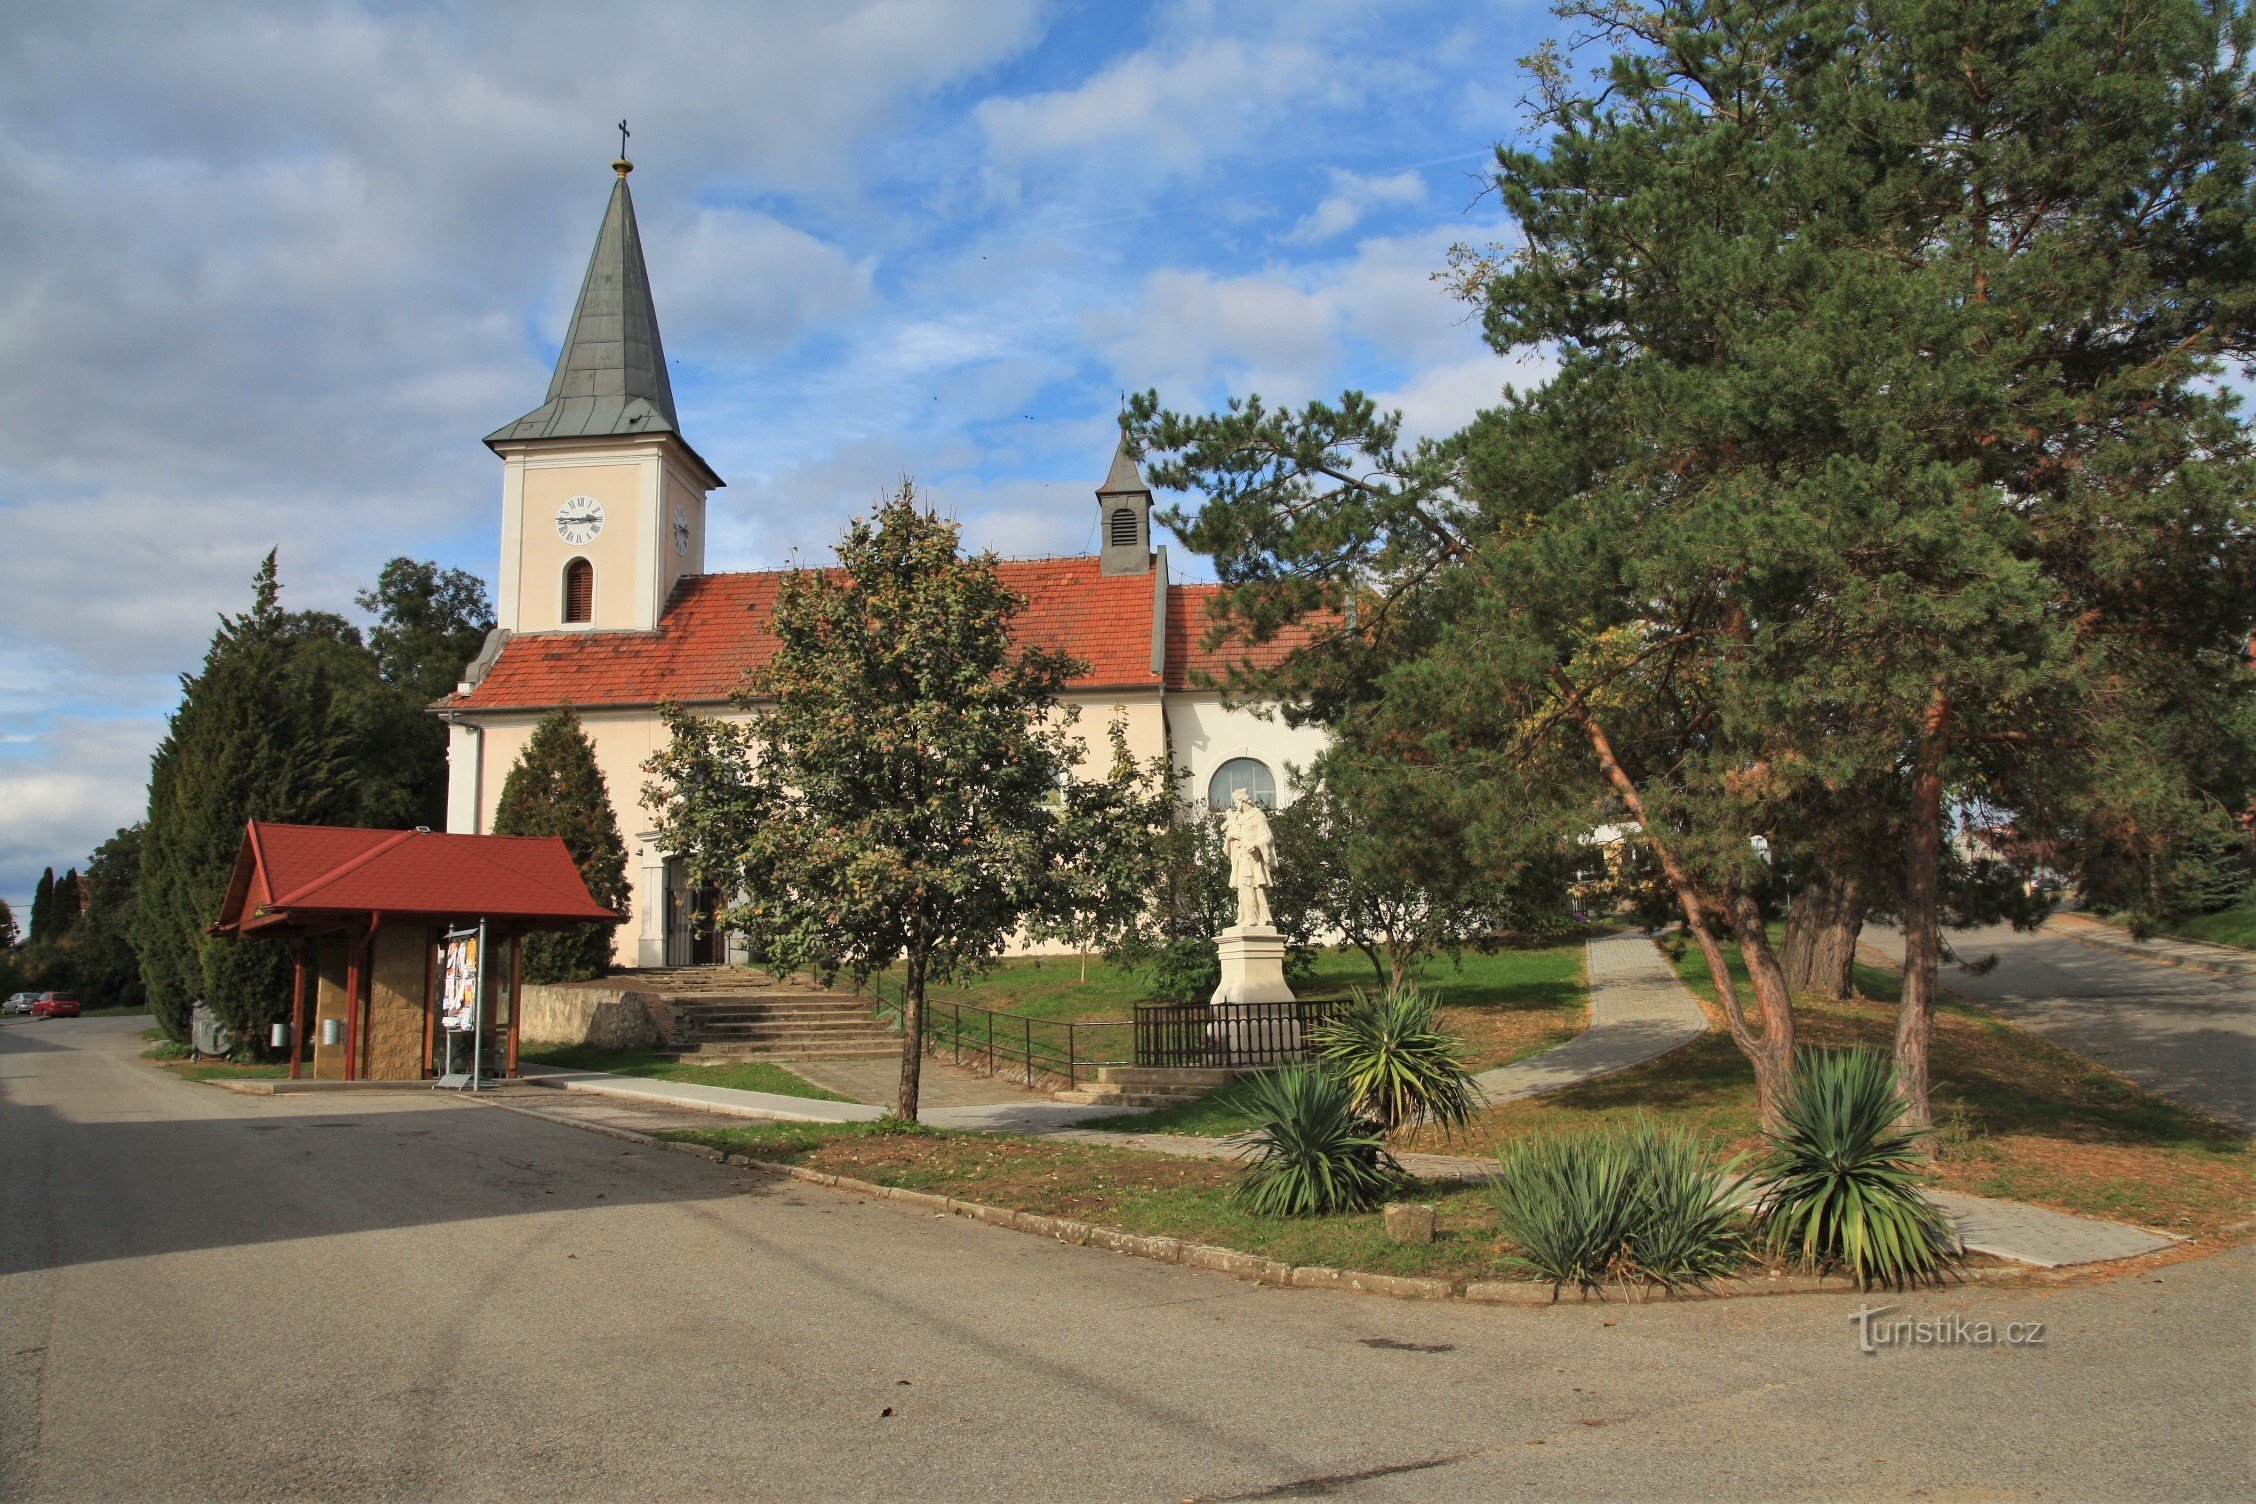 Satul Pribic este dominat de biserica Sf. Ioan Botezatorul